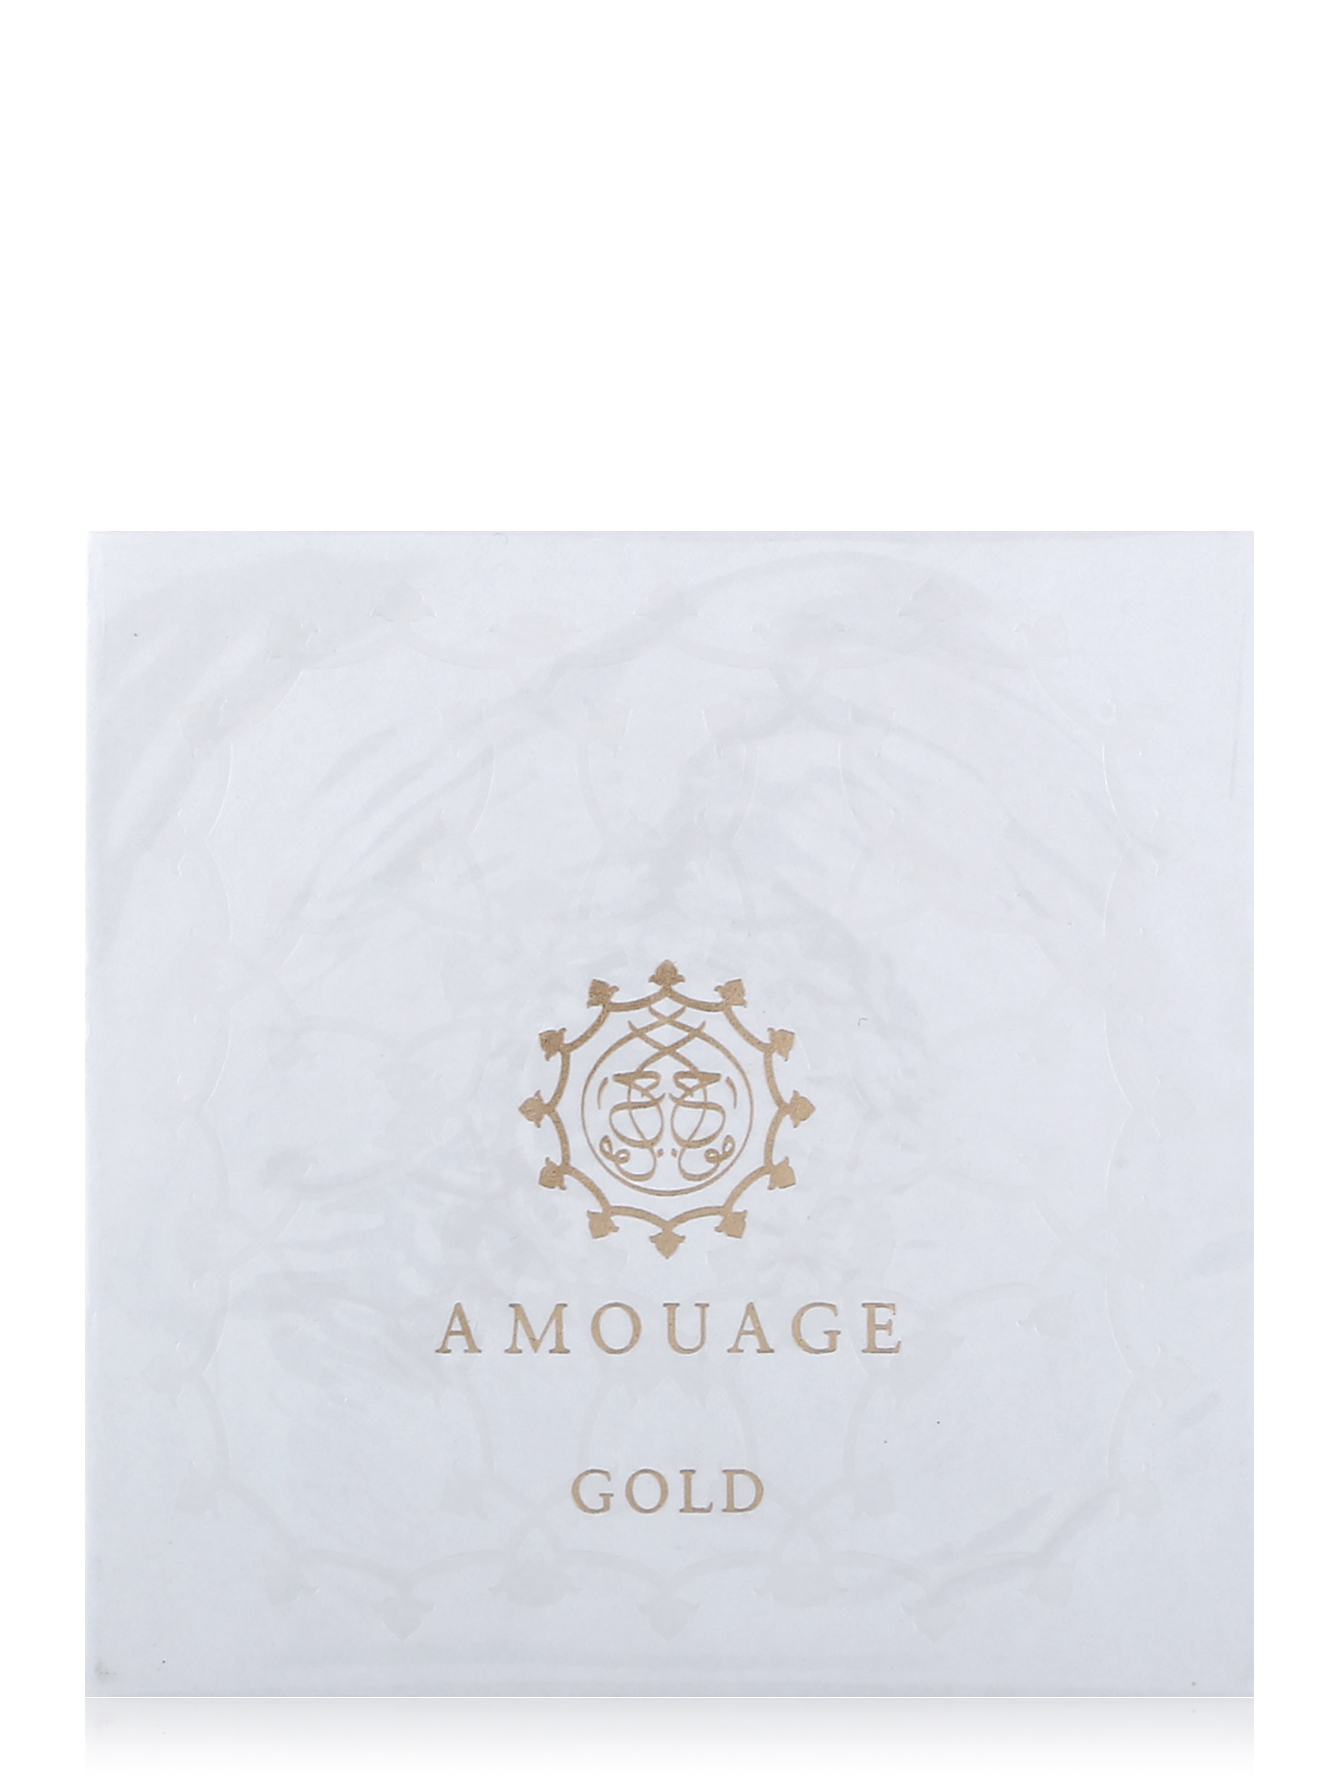  Мыло "Золото" - Amouage Gold - Общий вид